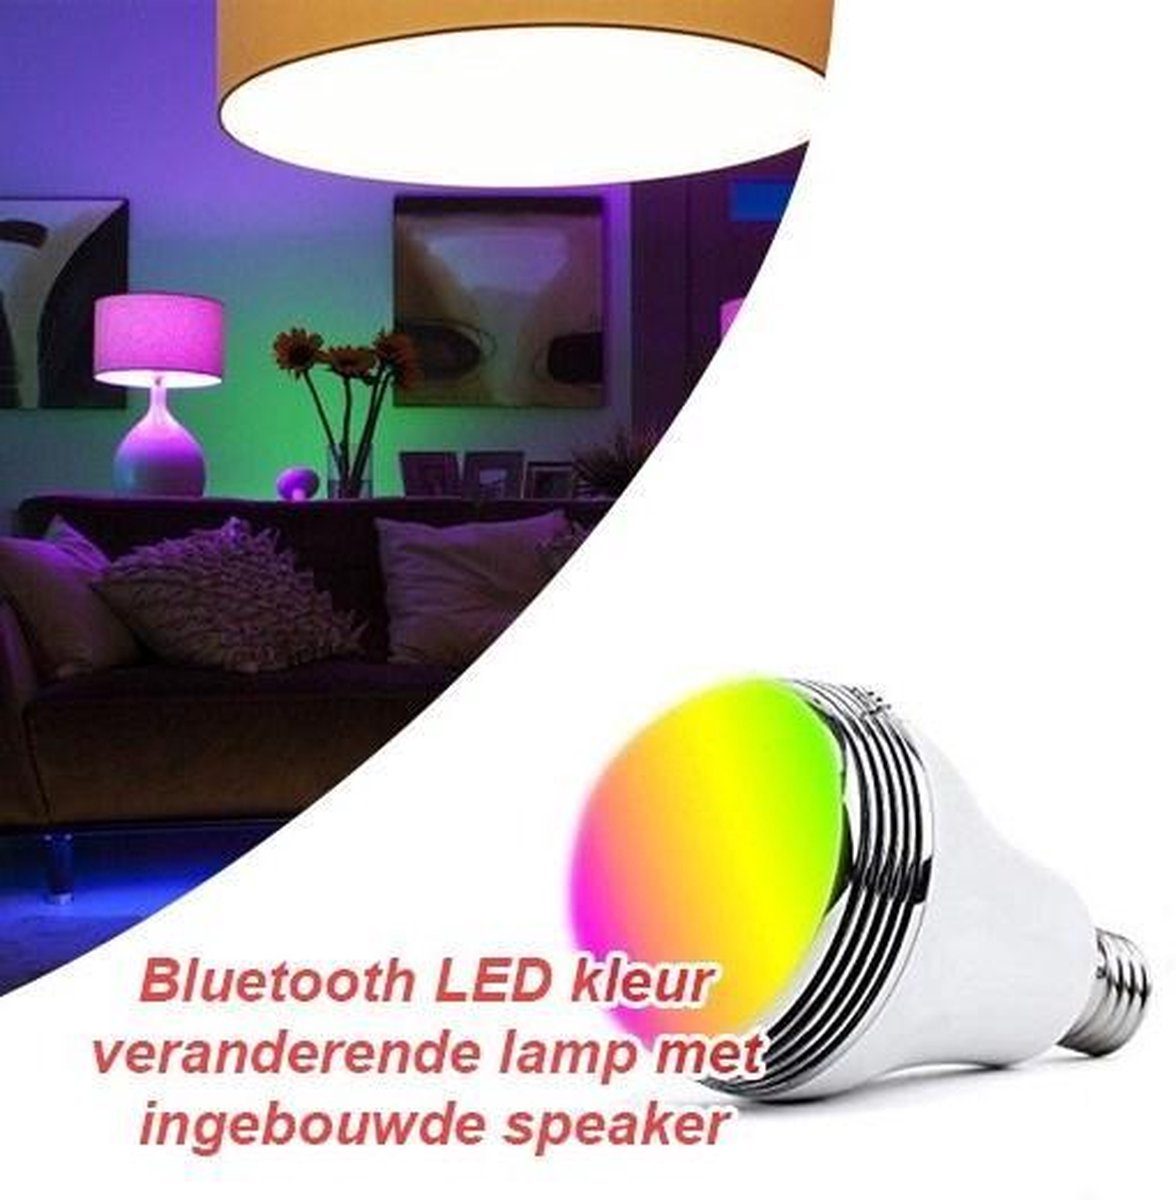 zoogdier Graden Celsius Lang Bluetooth LED kleur veranderende lamp met ingebouwde speaker | bol.com